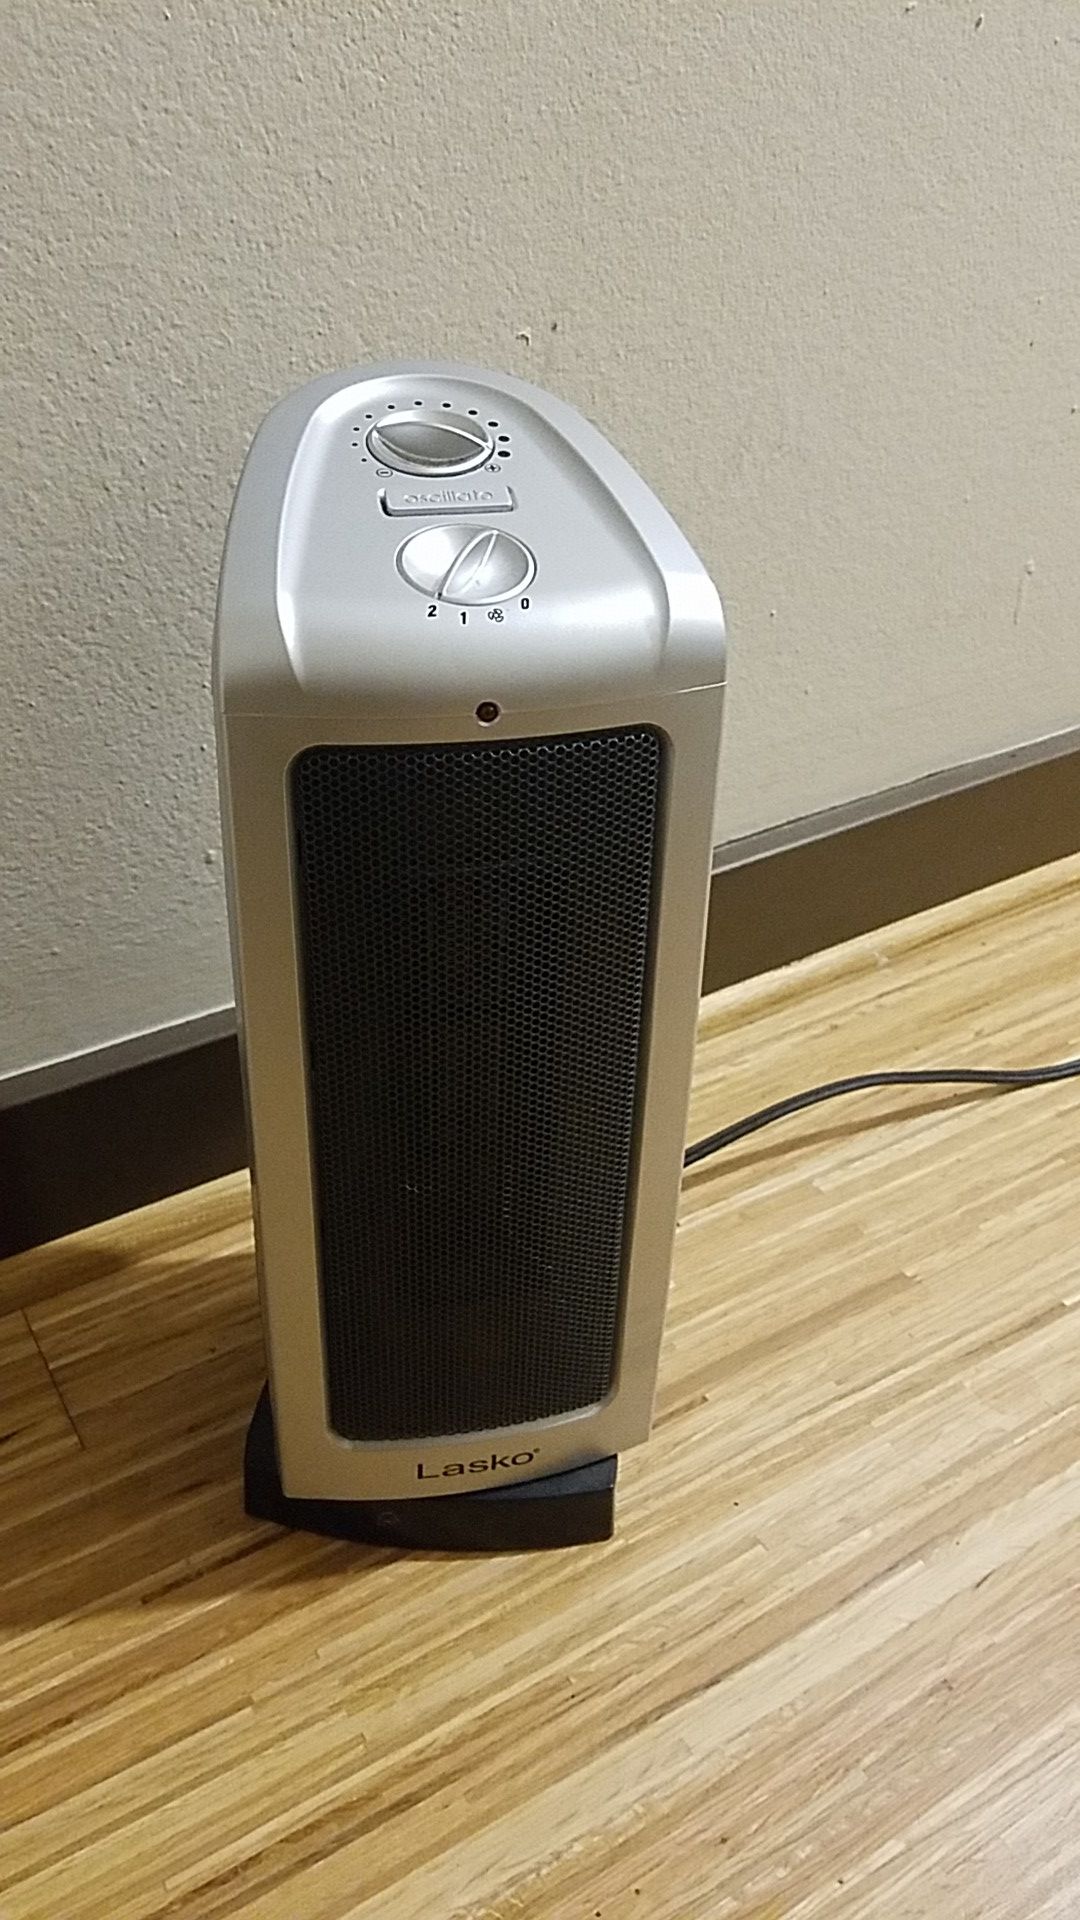 Lasko tower heating fan